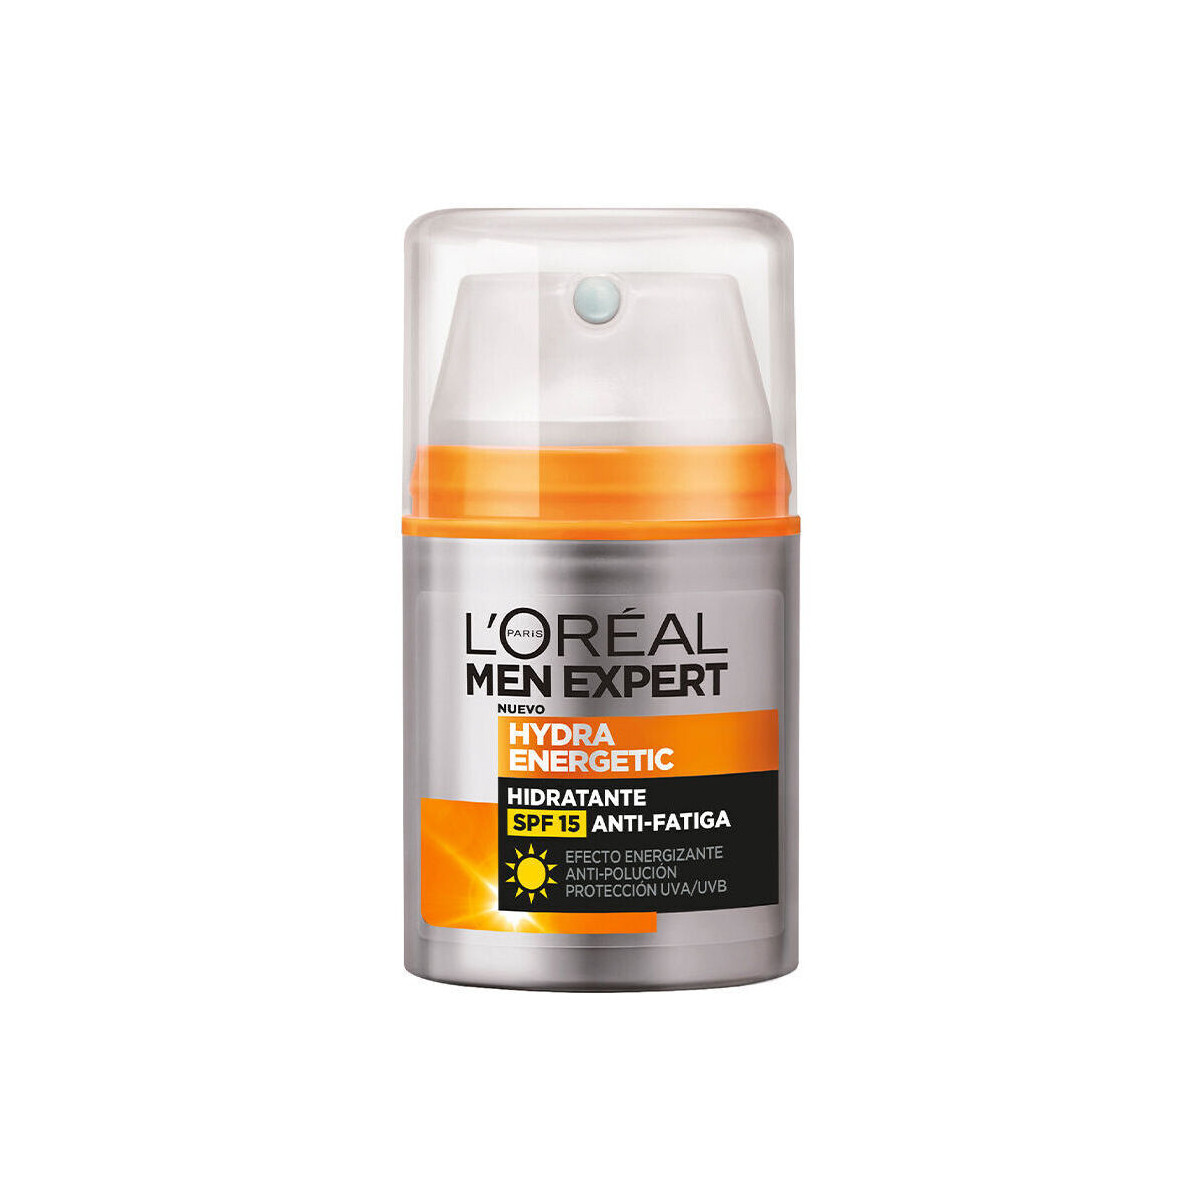 Belleza Cuidados especiales L'oréal Men Expert Hydra Energetic Hidratante Anti-fatiga Spf15 